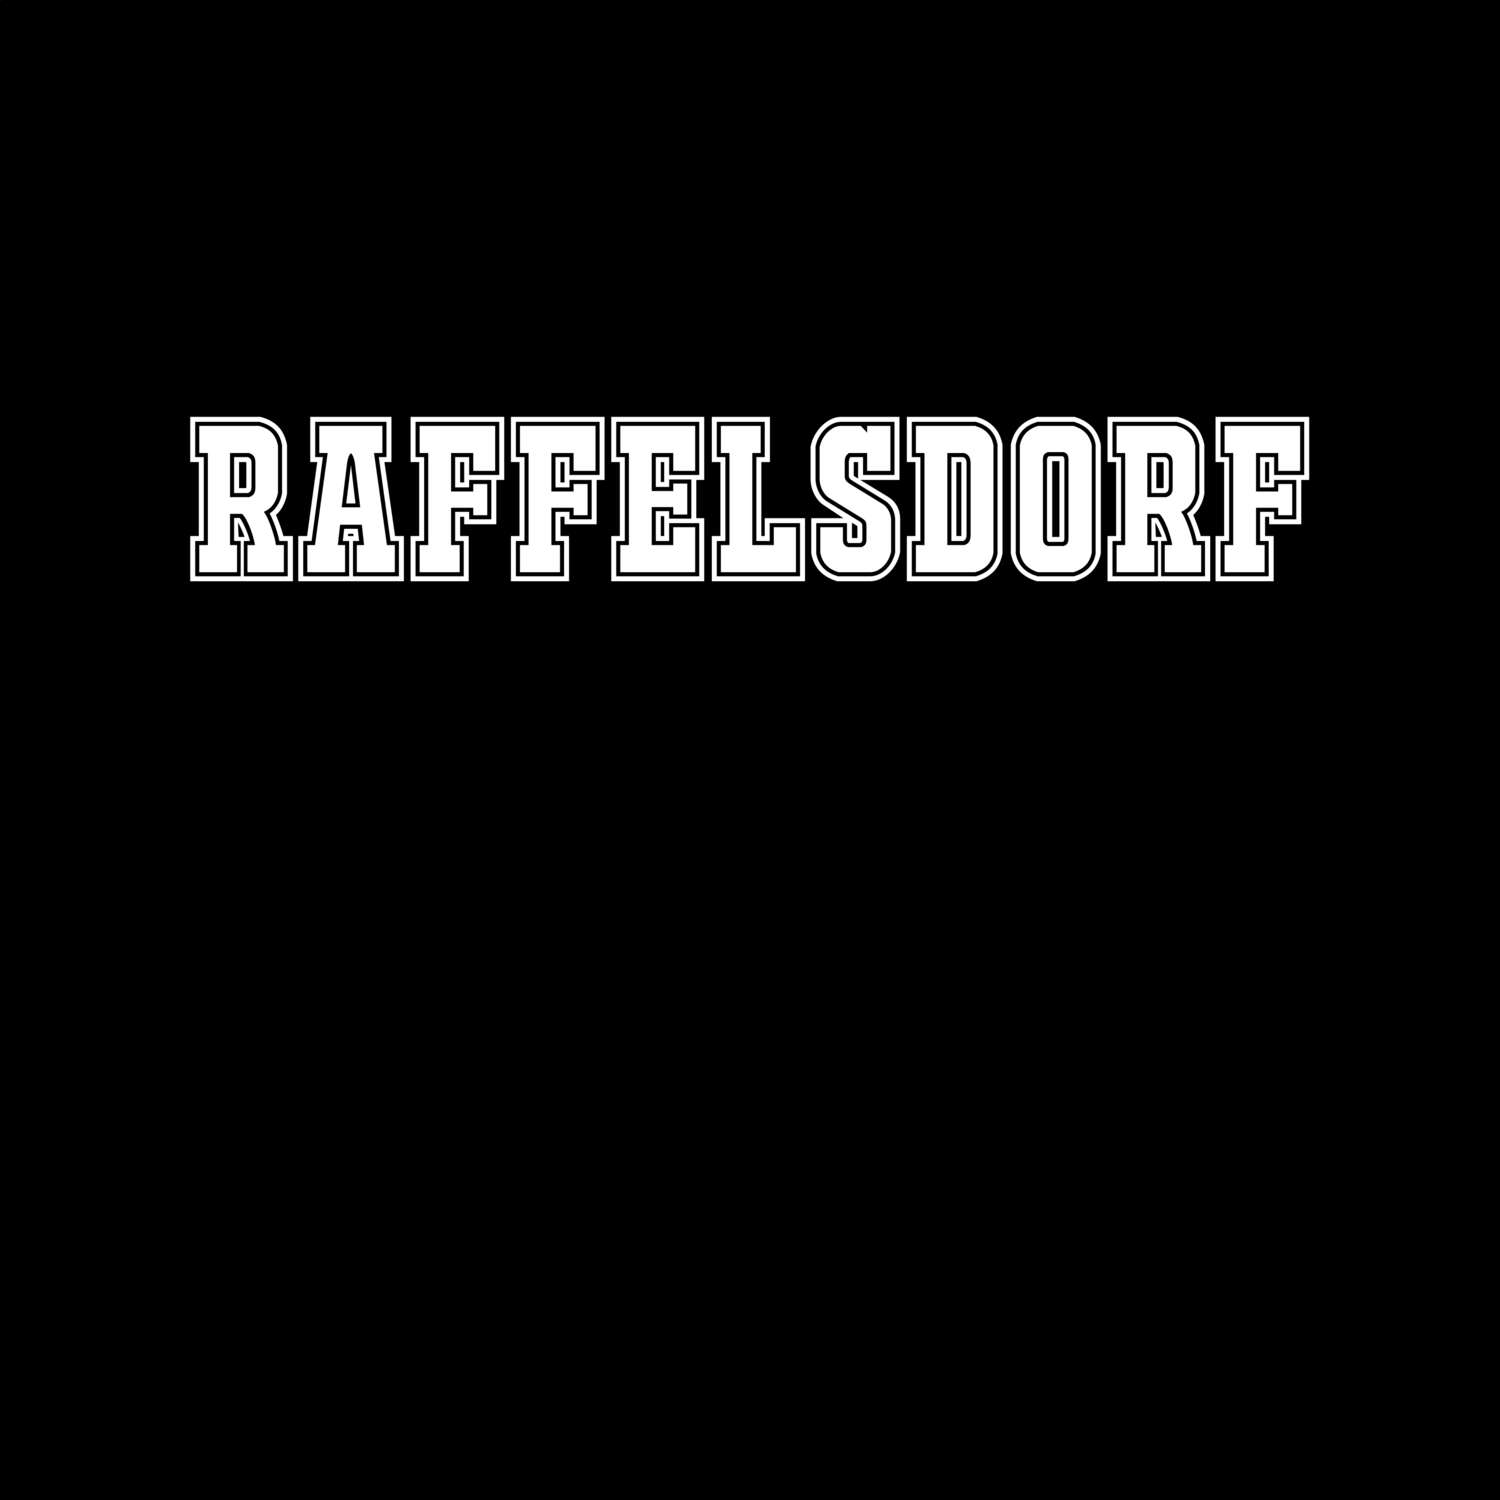 Raffelsdorf T-Shirt »Classic«